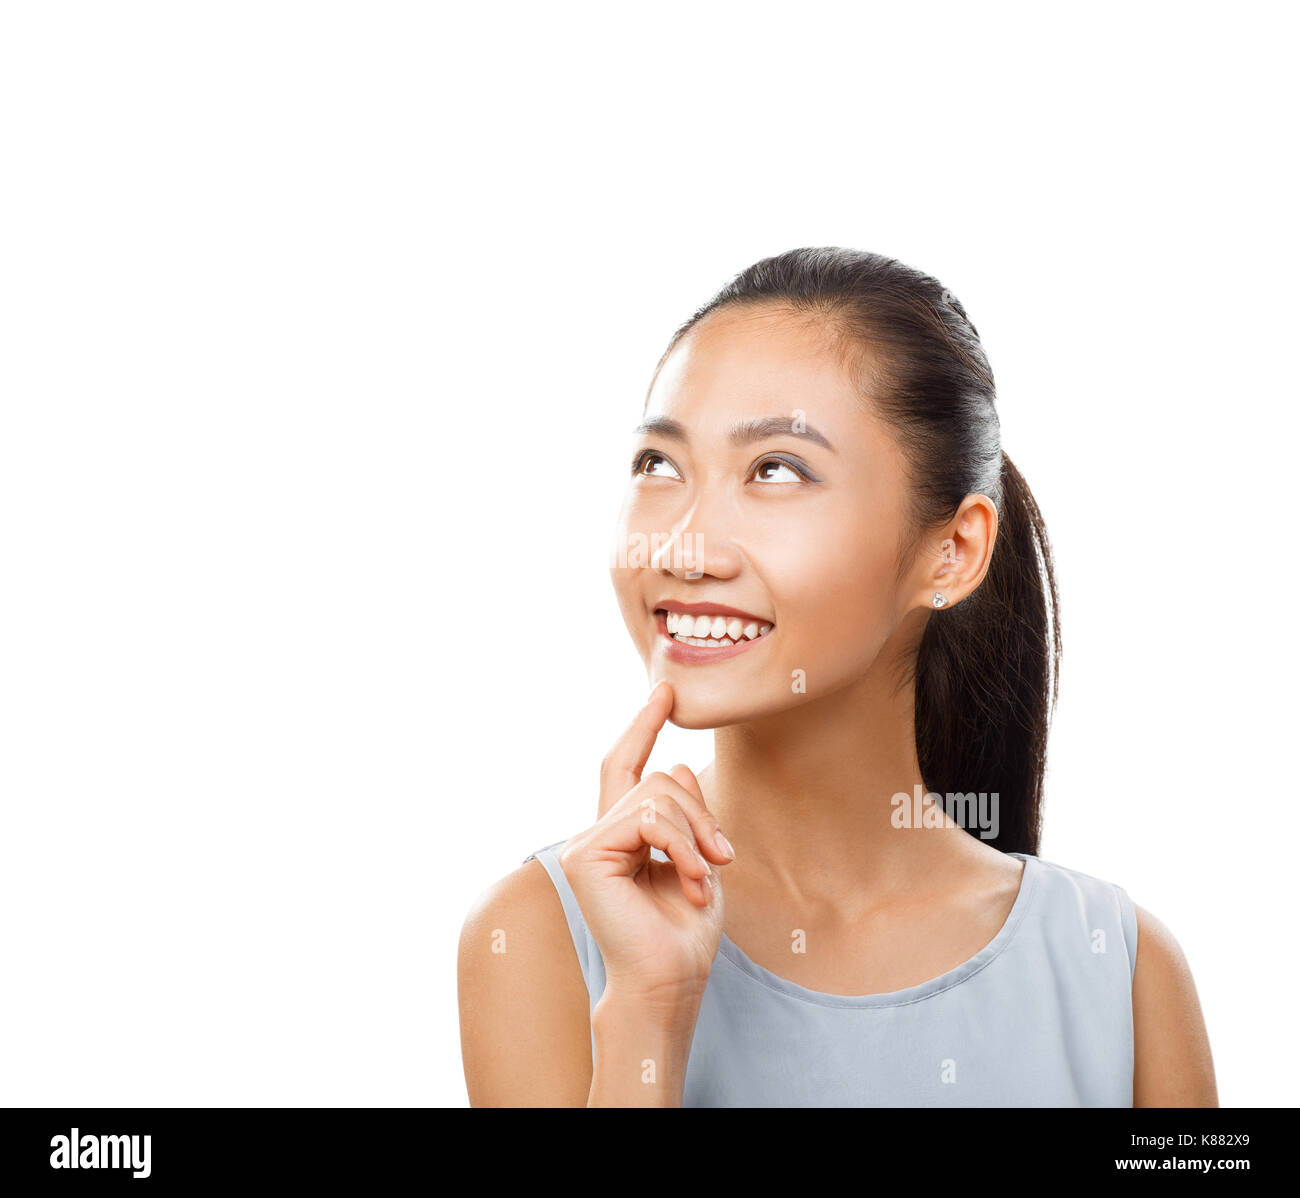 Jeune femme asiatique attrayant de rêver avec le doigt près de menton. Pensive girl smiling, portrait. Portrait of female model close up isolated on white Banque D'Images